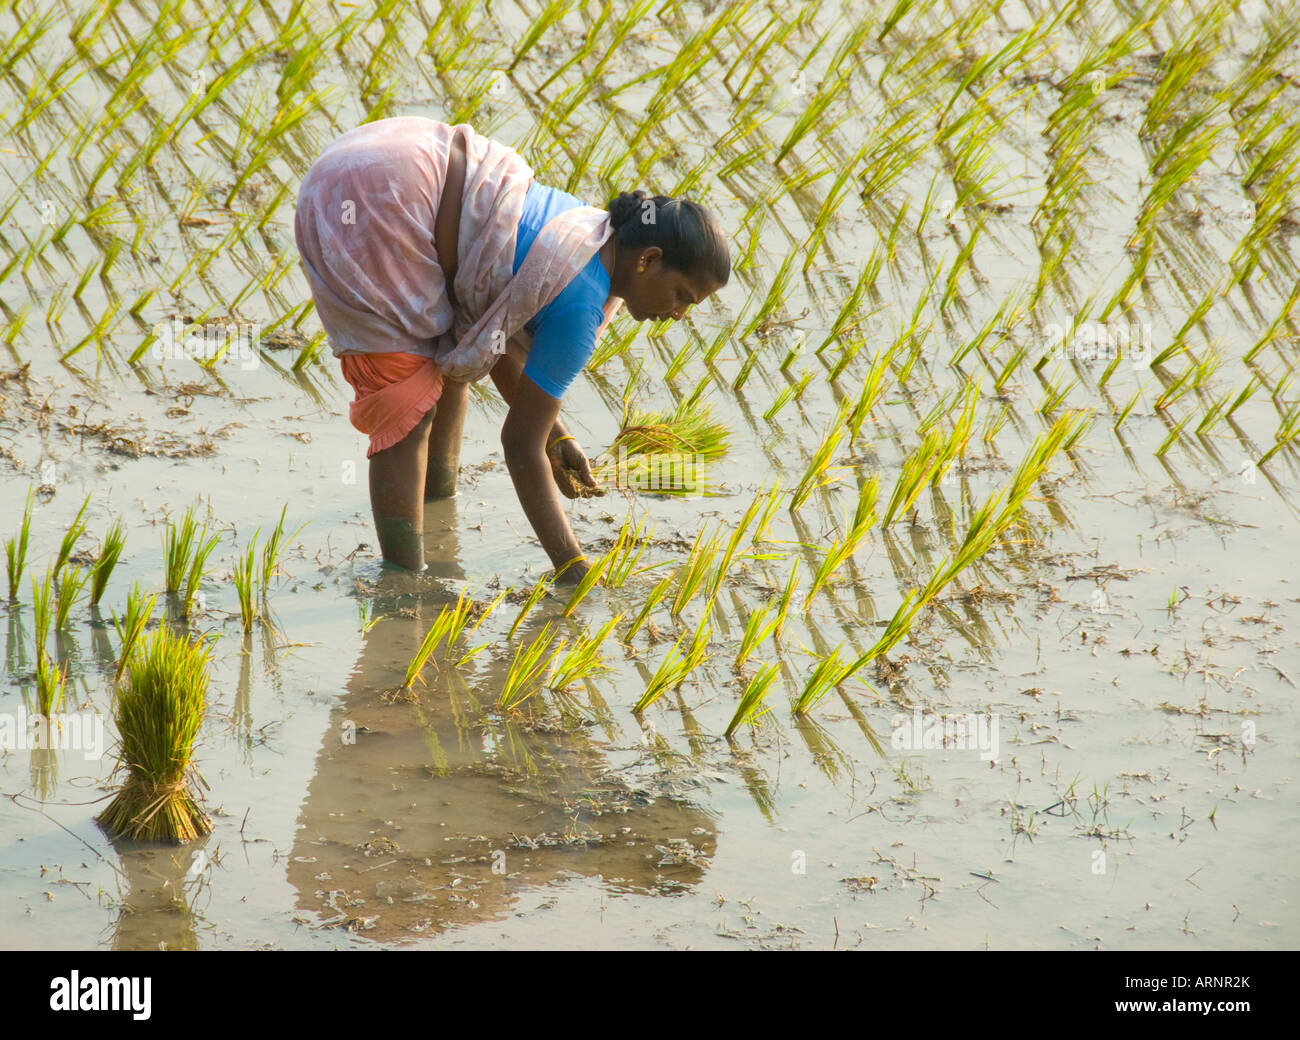 Une femme le repiquage du riz dans une rizière au Tamil Nadu Inde Banque D'Images